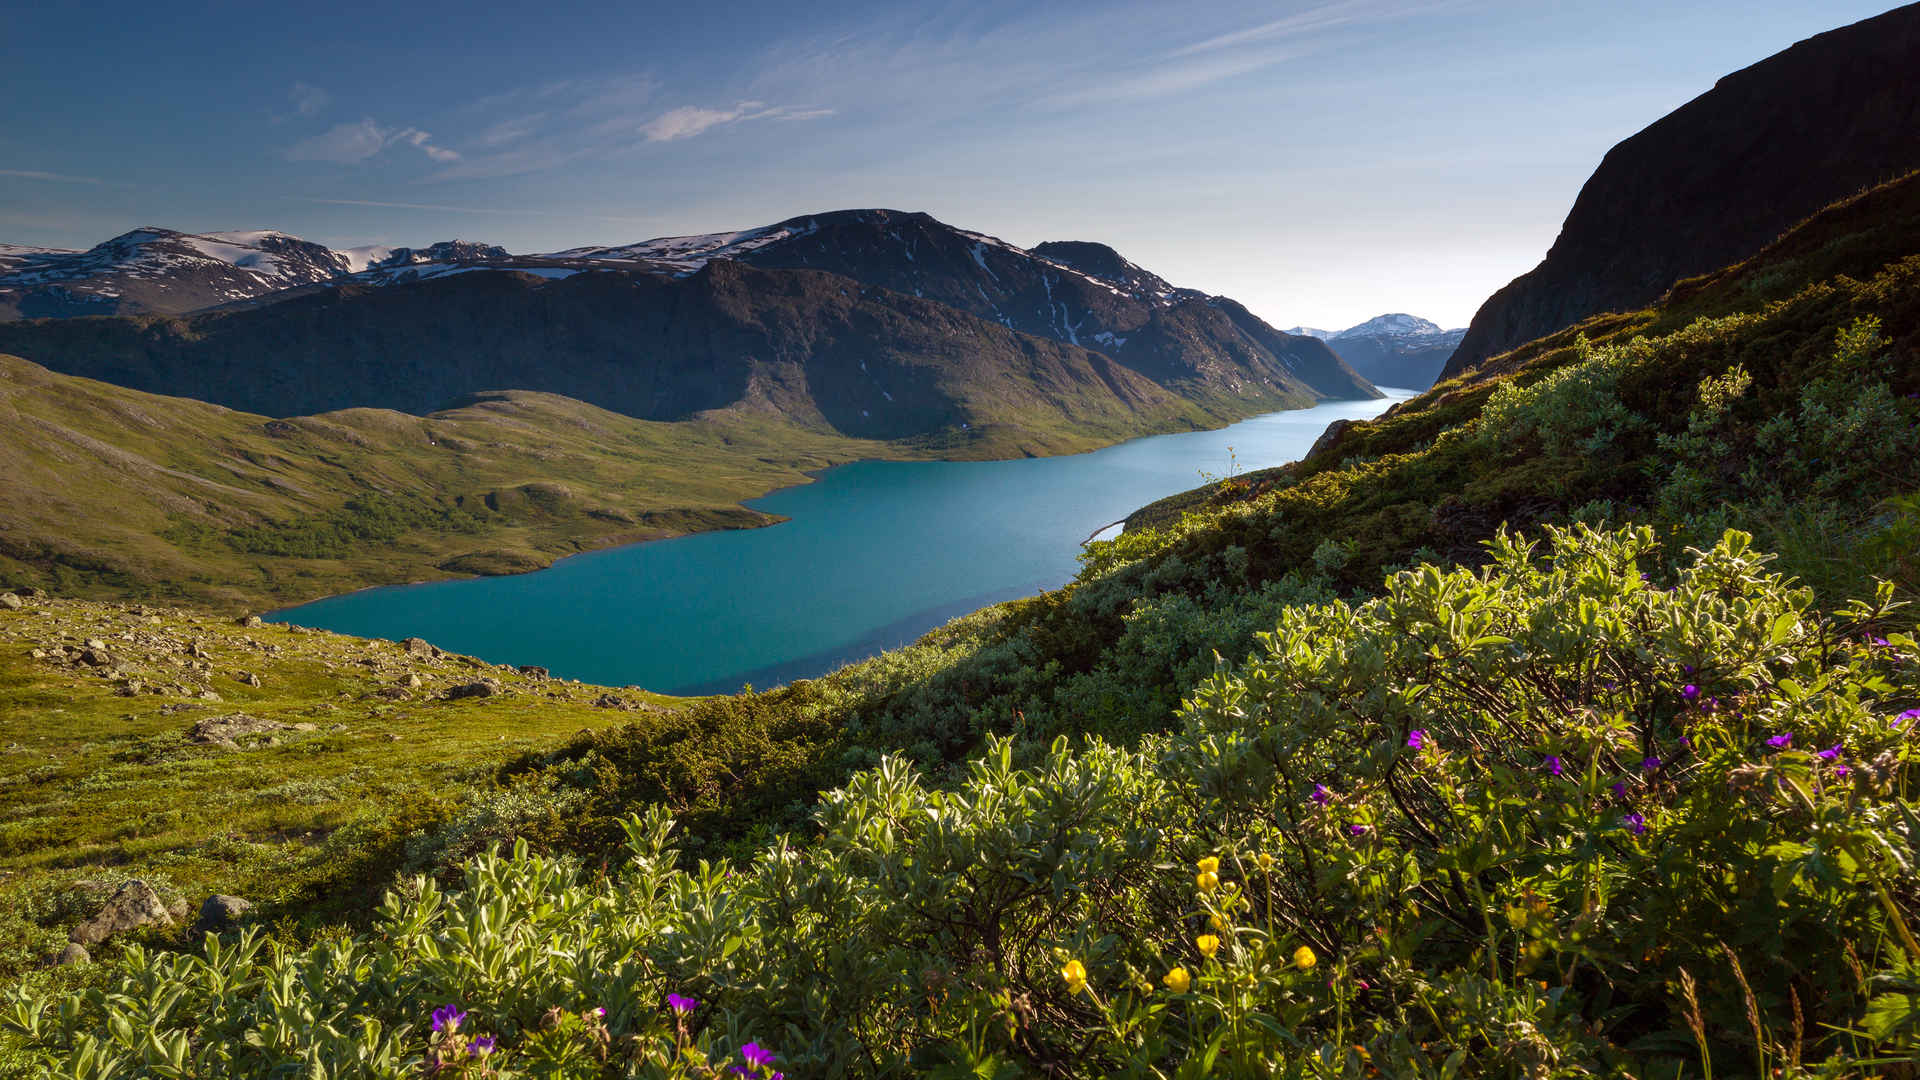 挪威绿松石色的高山湖泊风景壁纸